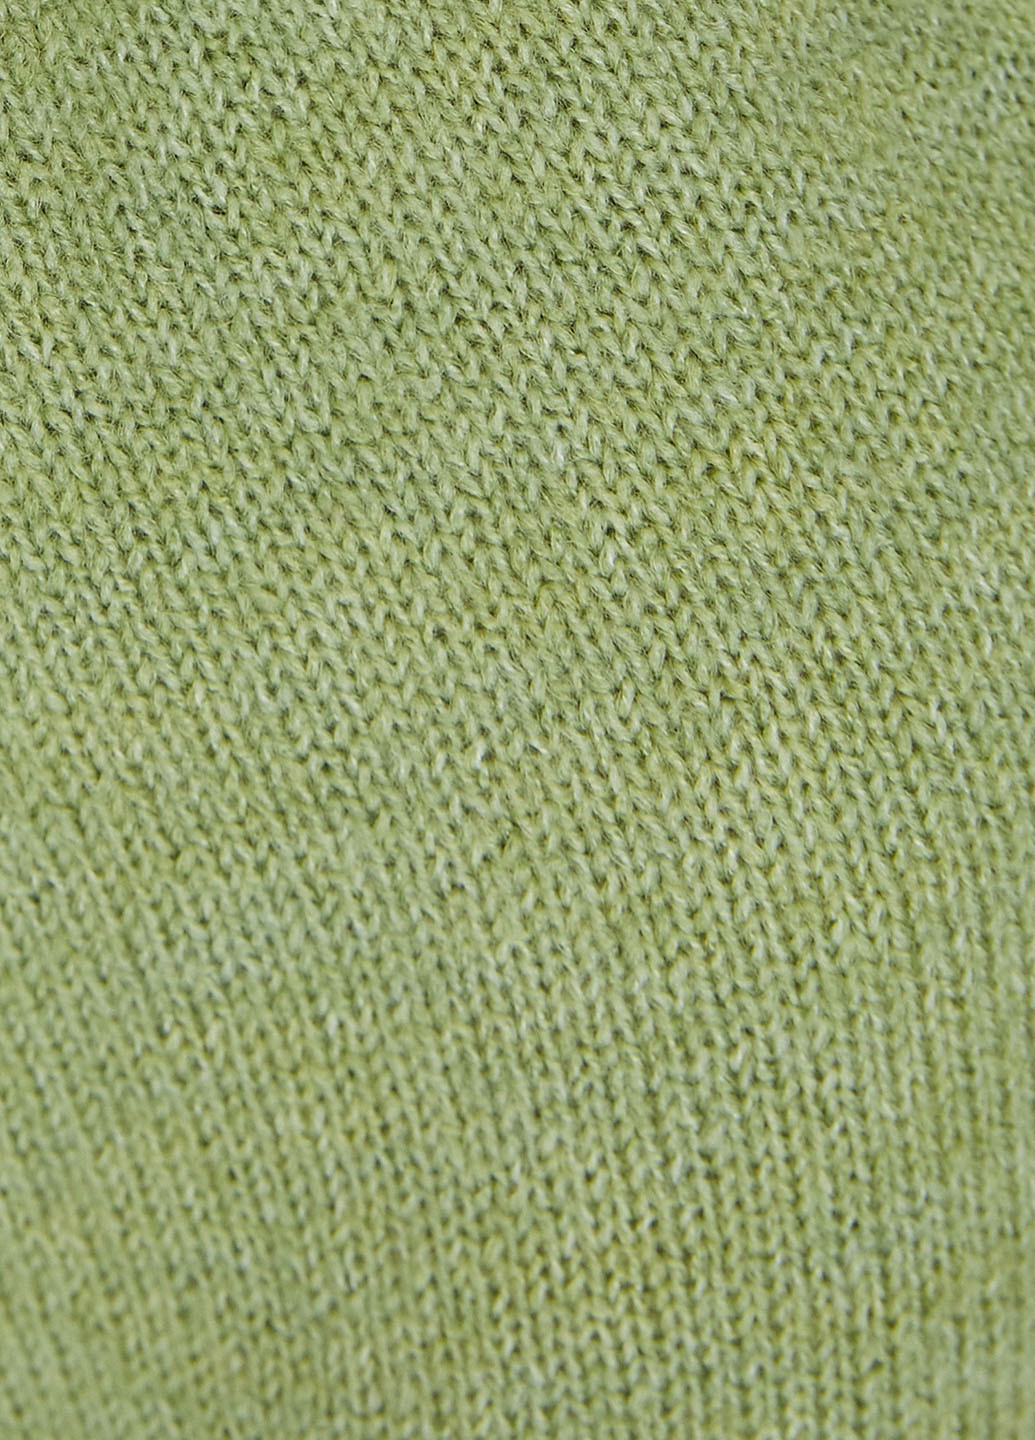 Фисташковый демисезонный пуловер пуловер KOTON